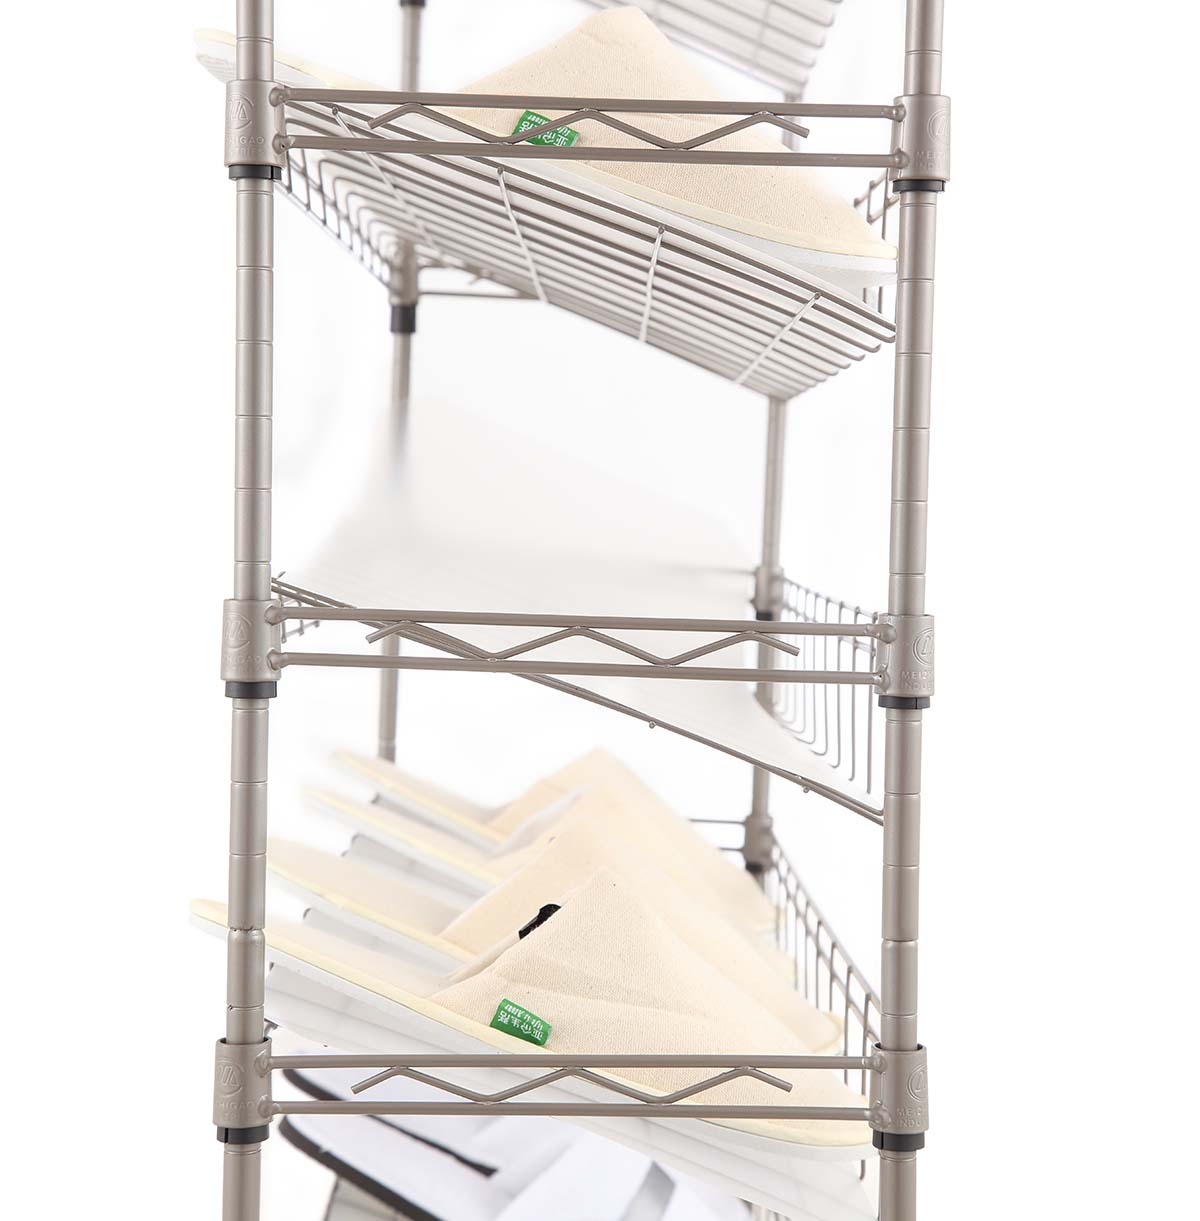 5 shelf wire storage rack